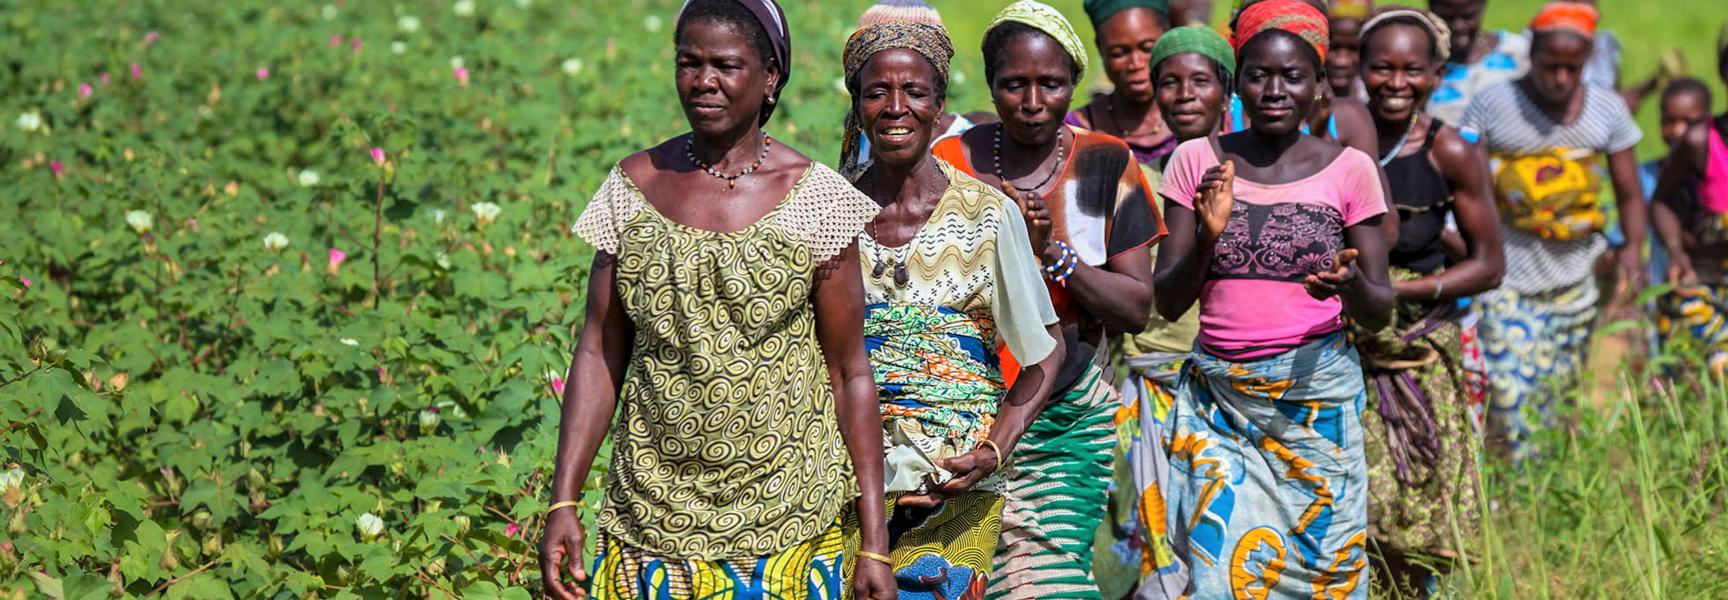 Mujeres rurales caminando en Benín